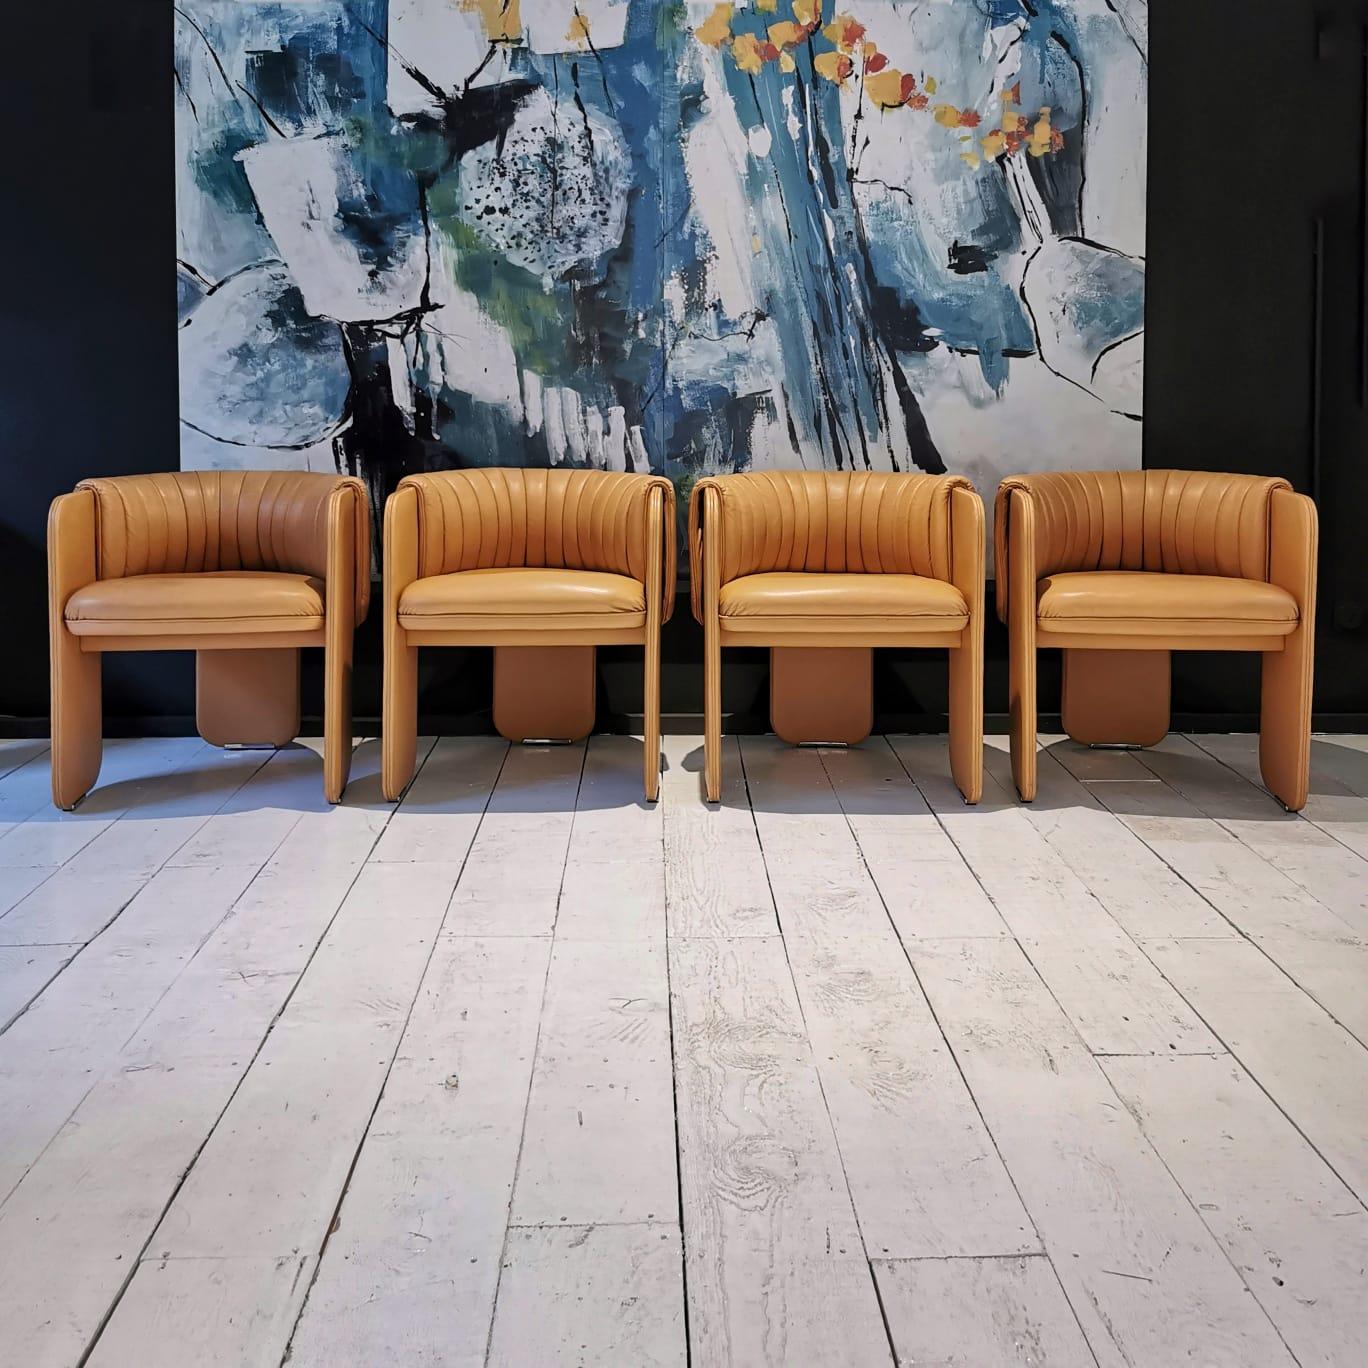 Set di poltroncine o sedie originali anni 70 prodotte da Poltrona Frau e disegnate da Luigi Massoni.
Dato l'alto costo di produzione e di acquisto negli anni 70 le sedie sono rare da trovare e si collocavano solo in arredamenti di lusso.
Le sedie